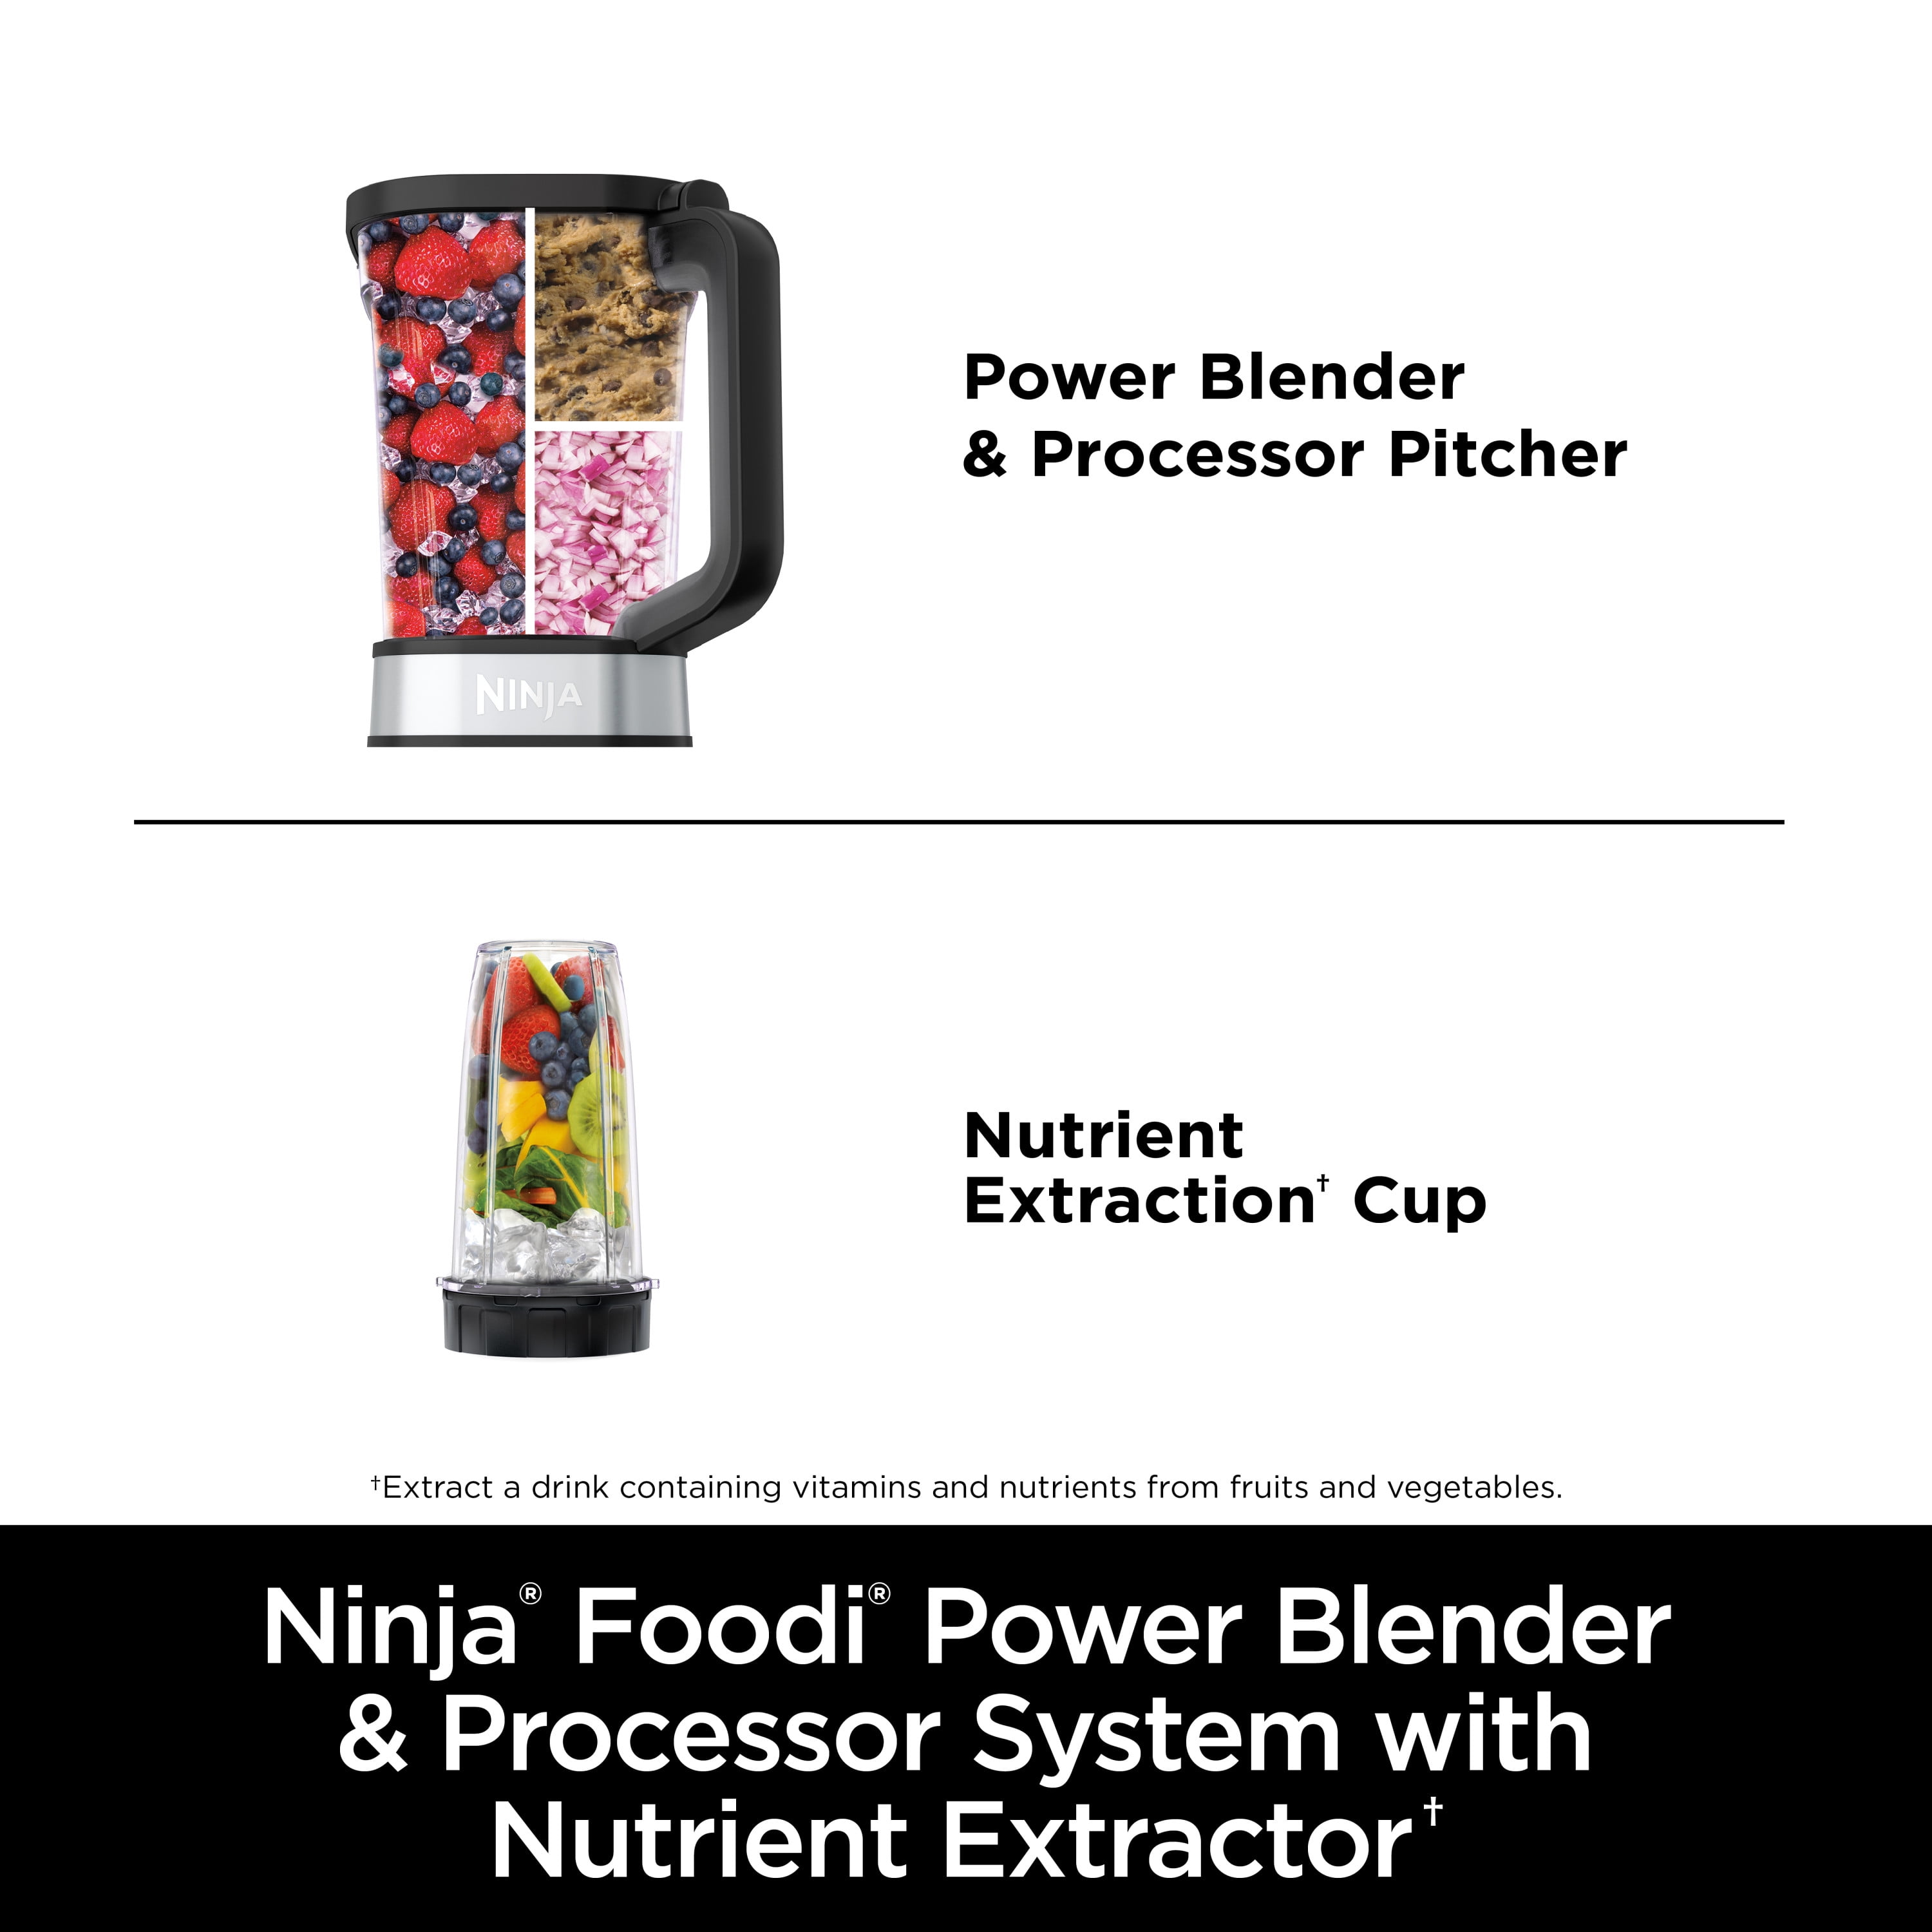 NINJA Foodi Power 3-in-1 Blender & Food Processor, 6 Auto-iQ